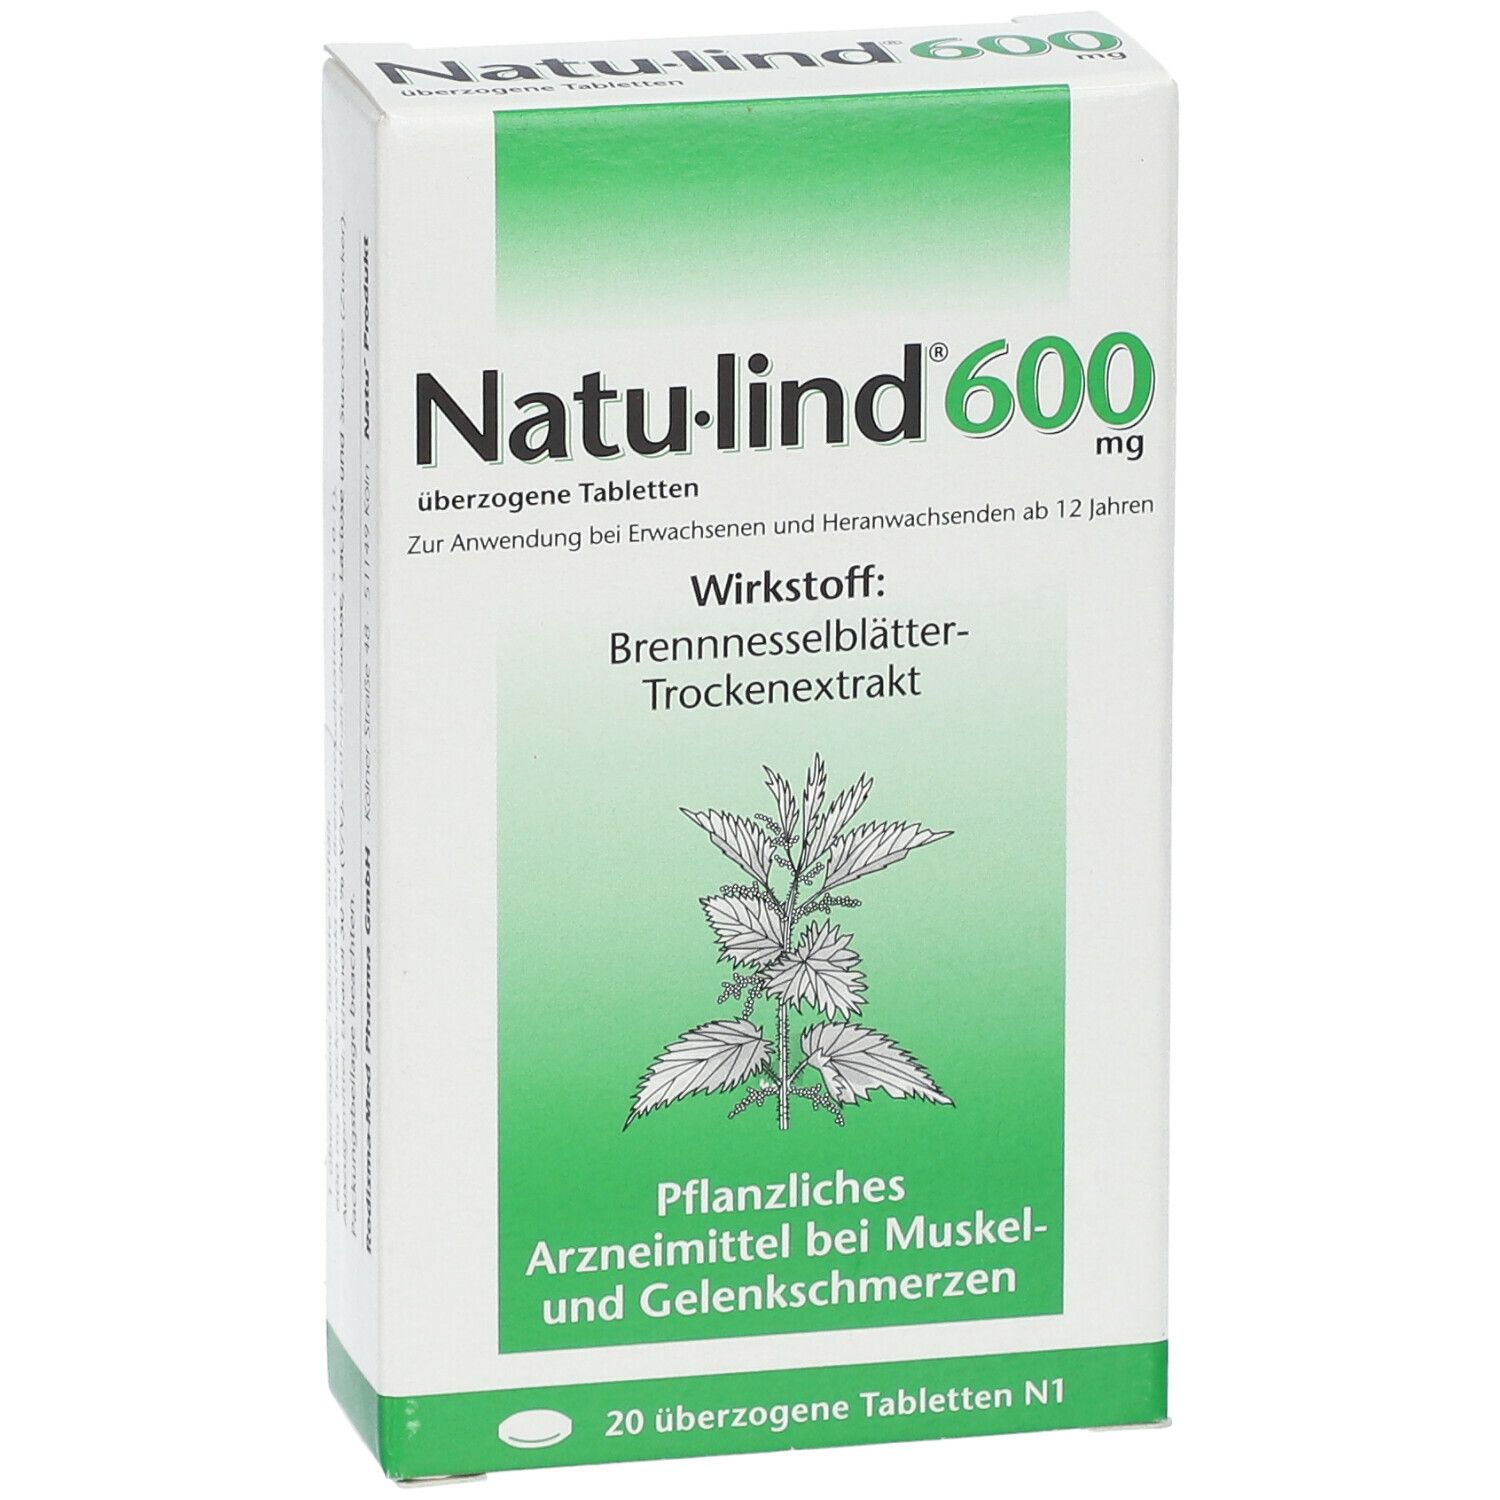 Natu-lind® 600 mg